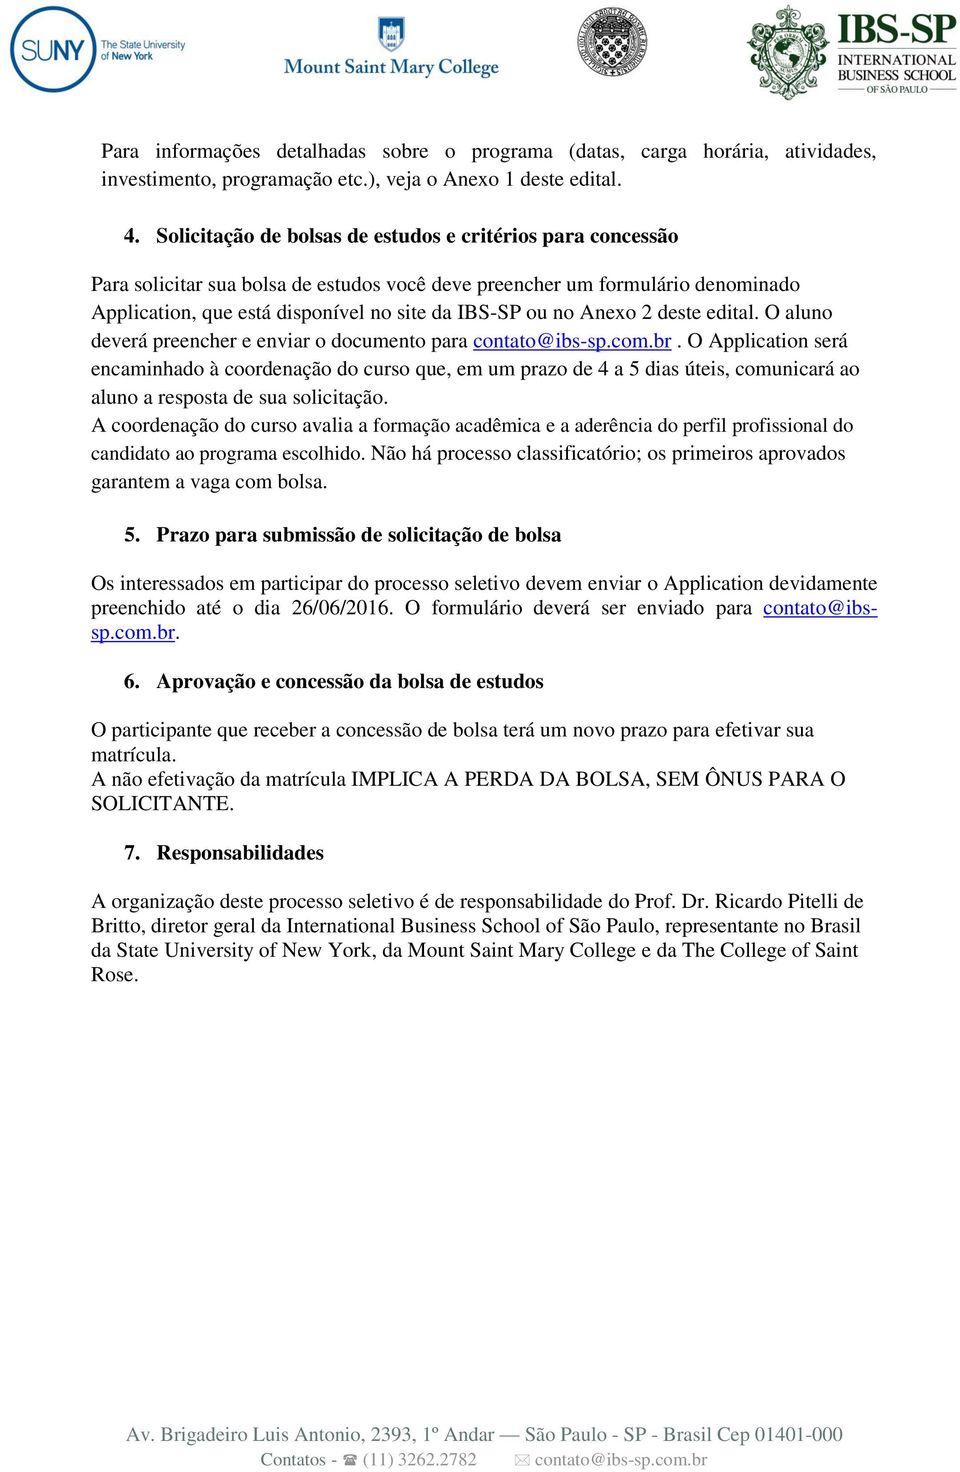 Anexo 2 deste edital. O aluno deverá preencher e enviar o documento para contato@ibs-sp.com.br.